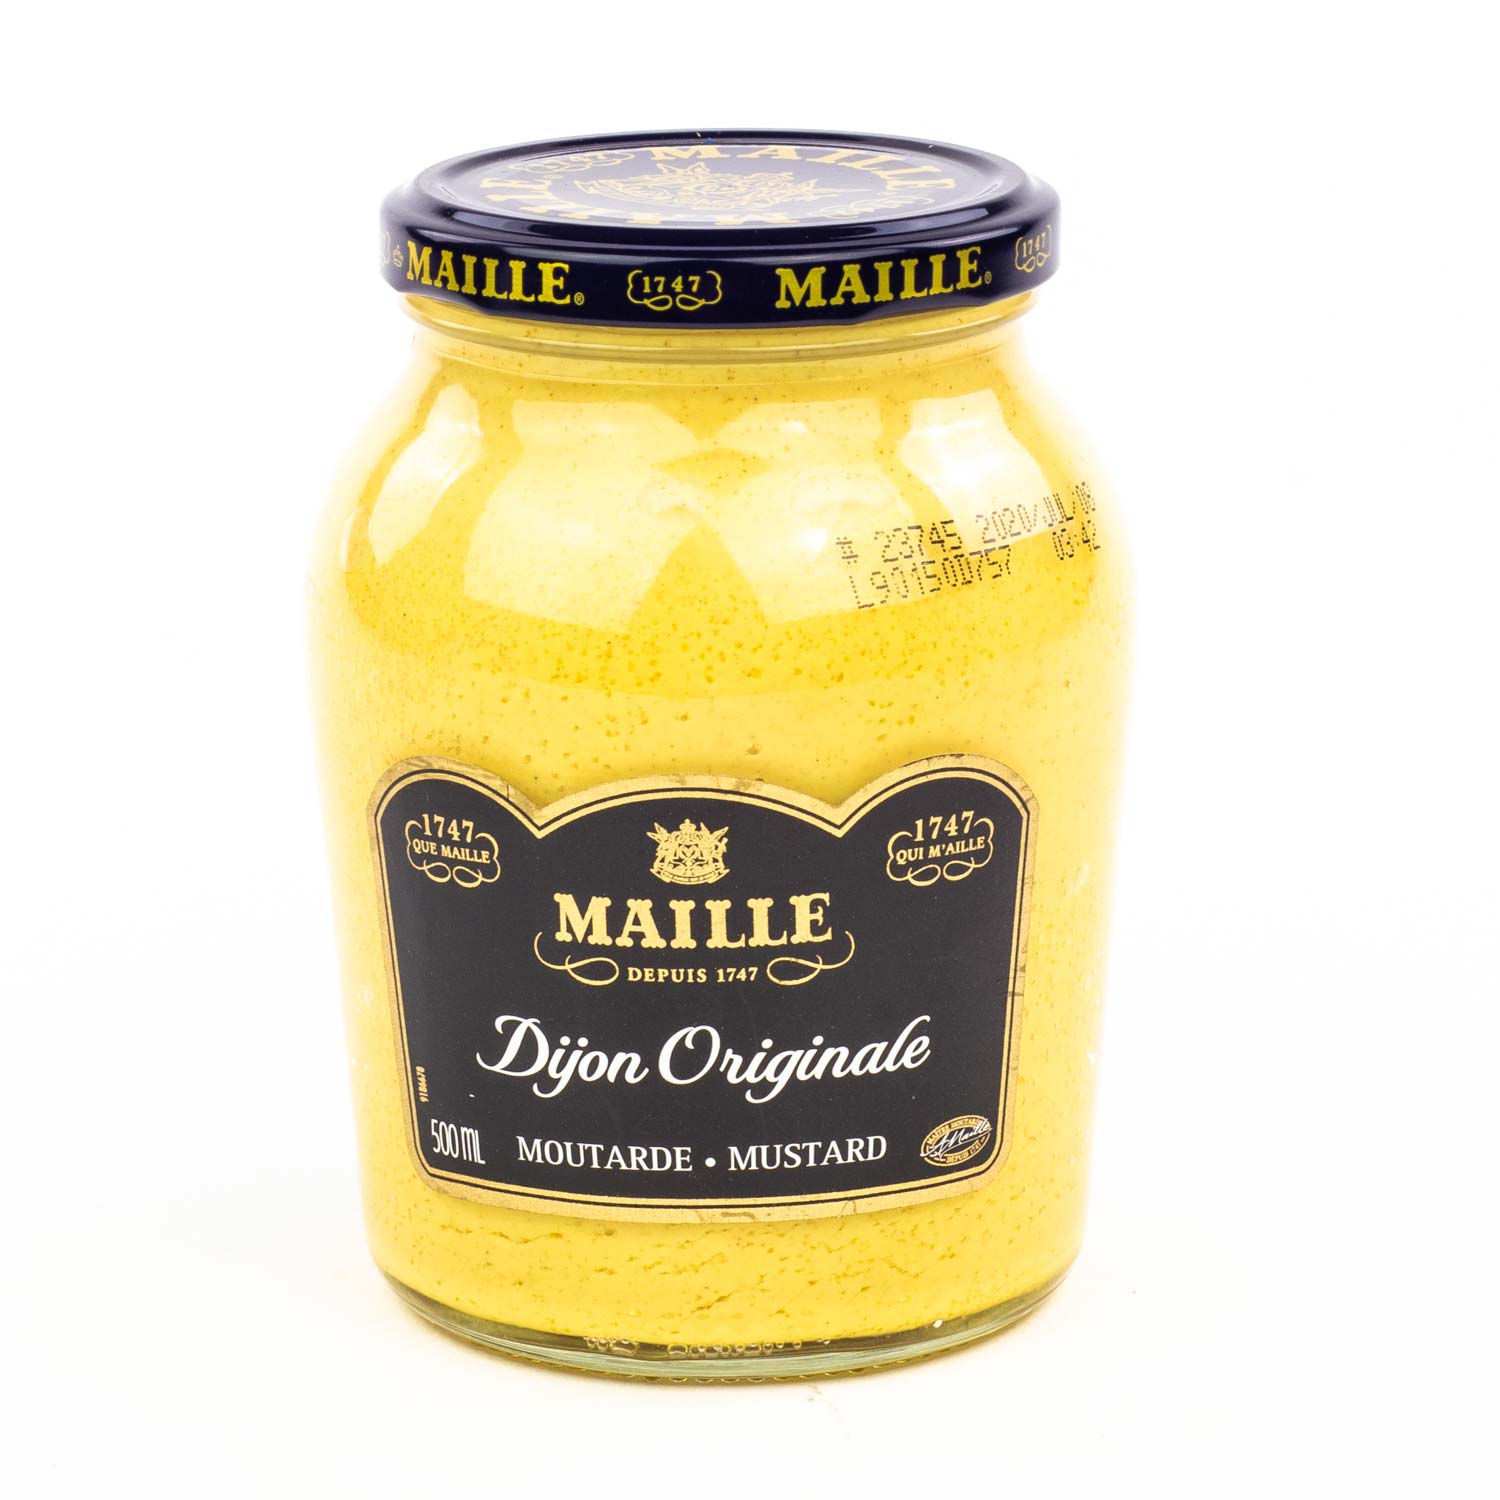 Rayes Mustard, European-Style Dijon, Mustard